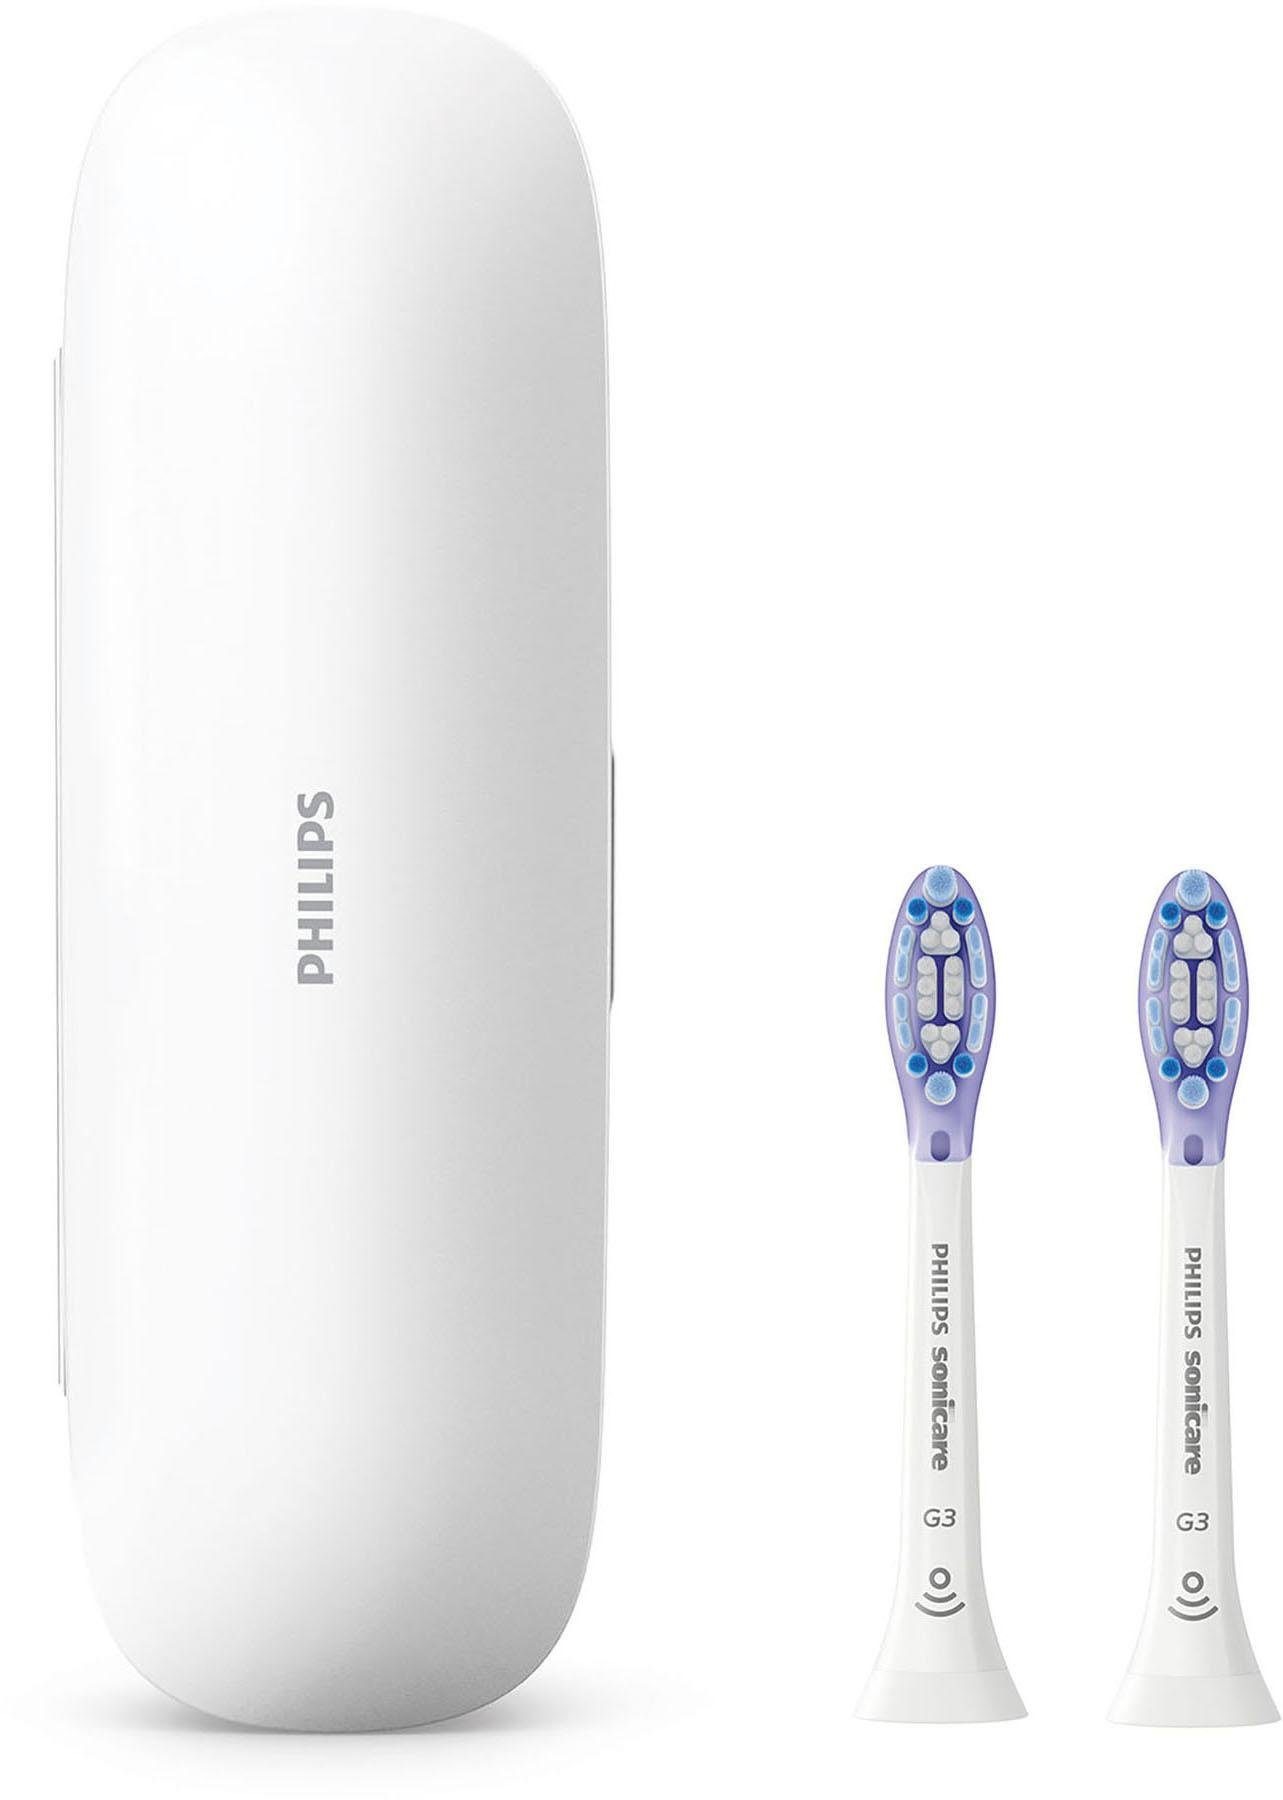 Philips Sonicare Elektrische Zahnbürste »HX9611/19«, 4 St. Aufsteckbürsten, ExpertClean 7300 Schallzahnbürste, mit 2 ExpertClean Handstücke